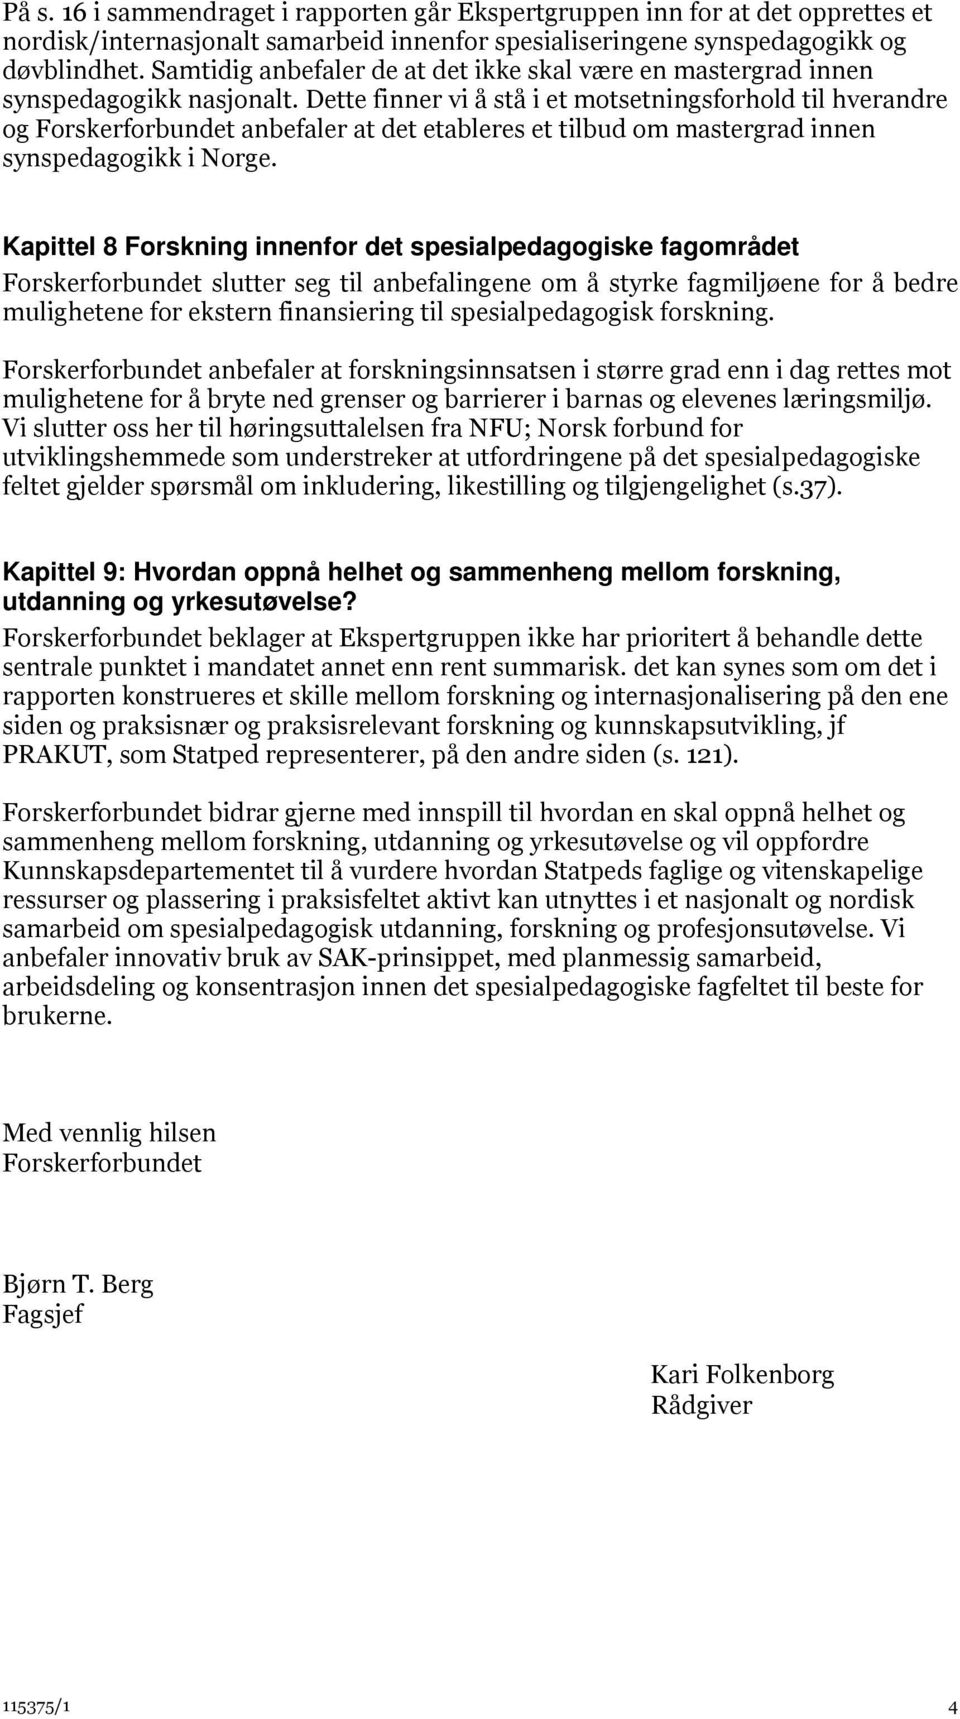 Dette finner vi å stå i et motsetningsforhold til hverandre og Forskerforbundet anbefaler at det etableres et tilbud om mastergrad innen synspedagogikk i Norge.